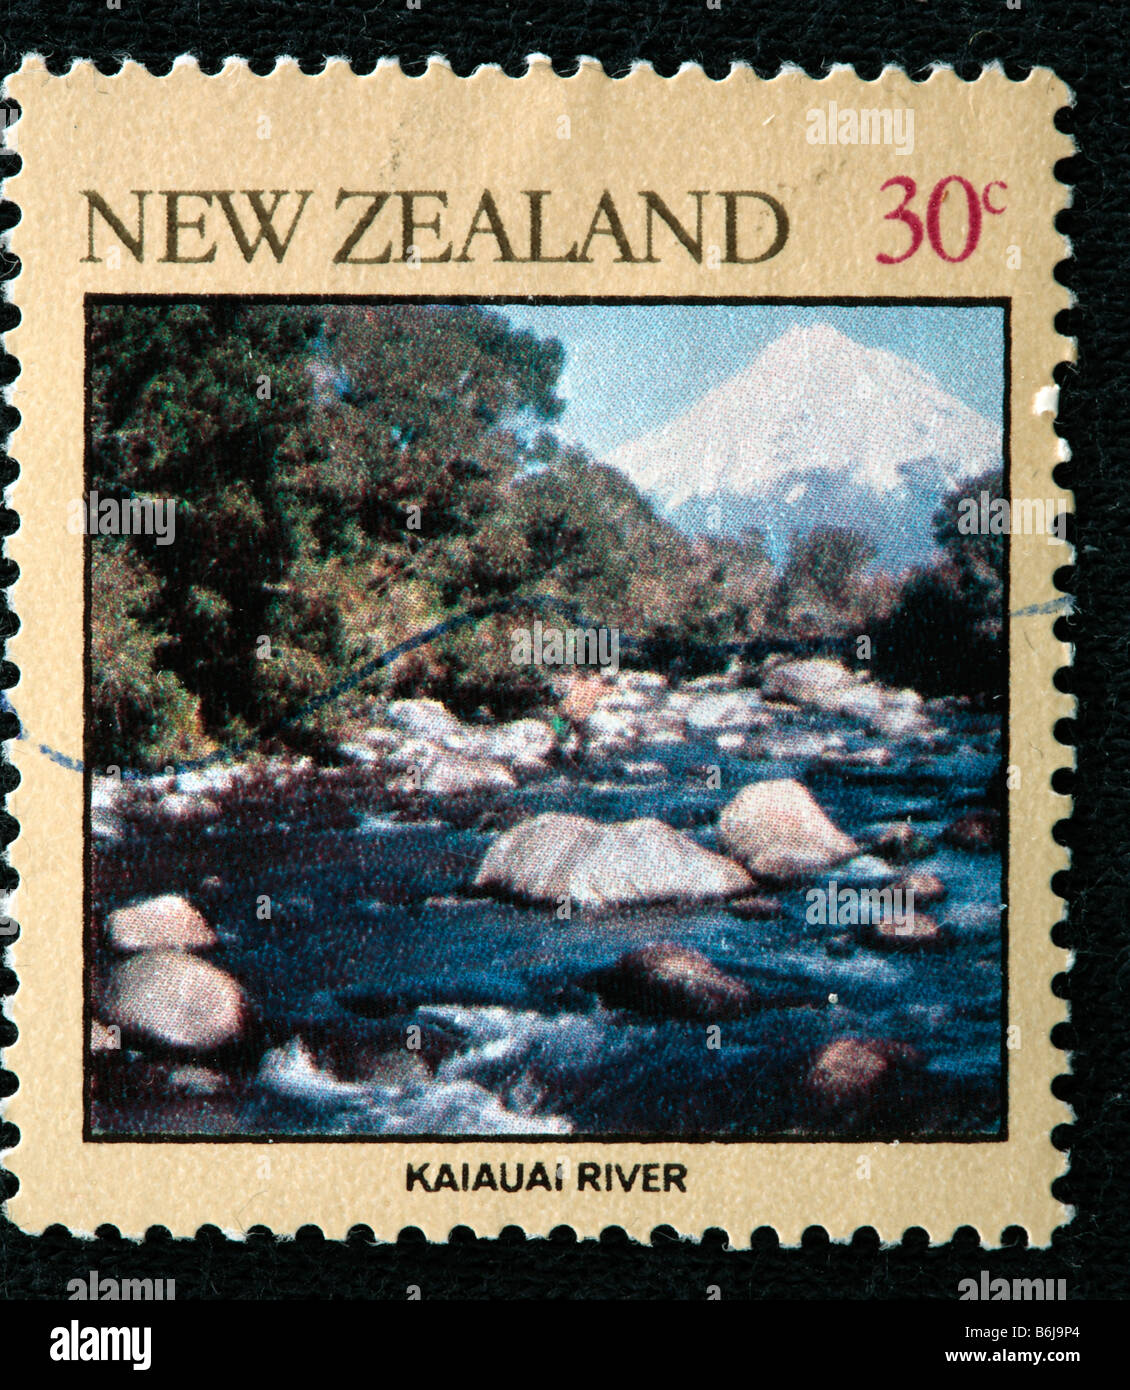 Kaiauai river, postage stamp, New Zealand Stock Photo